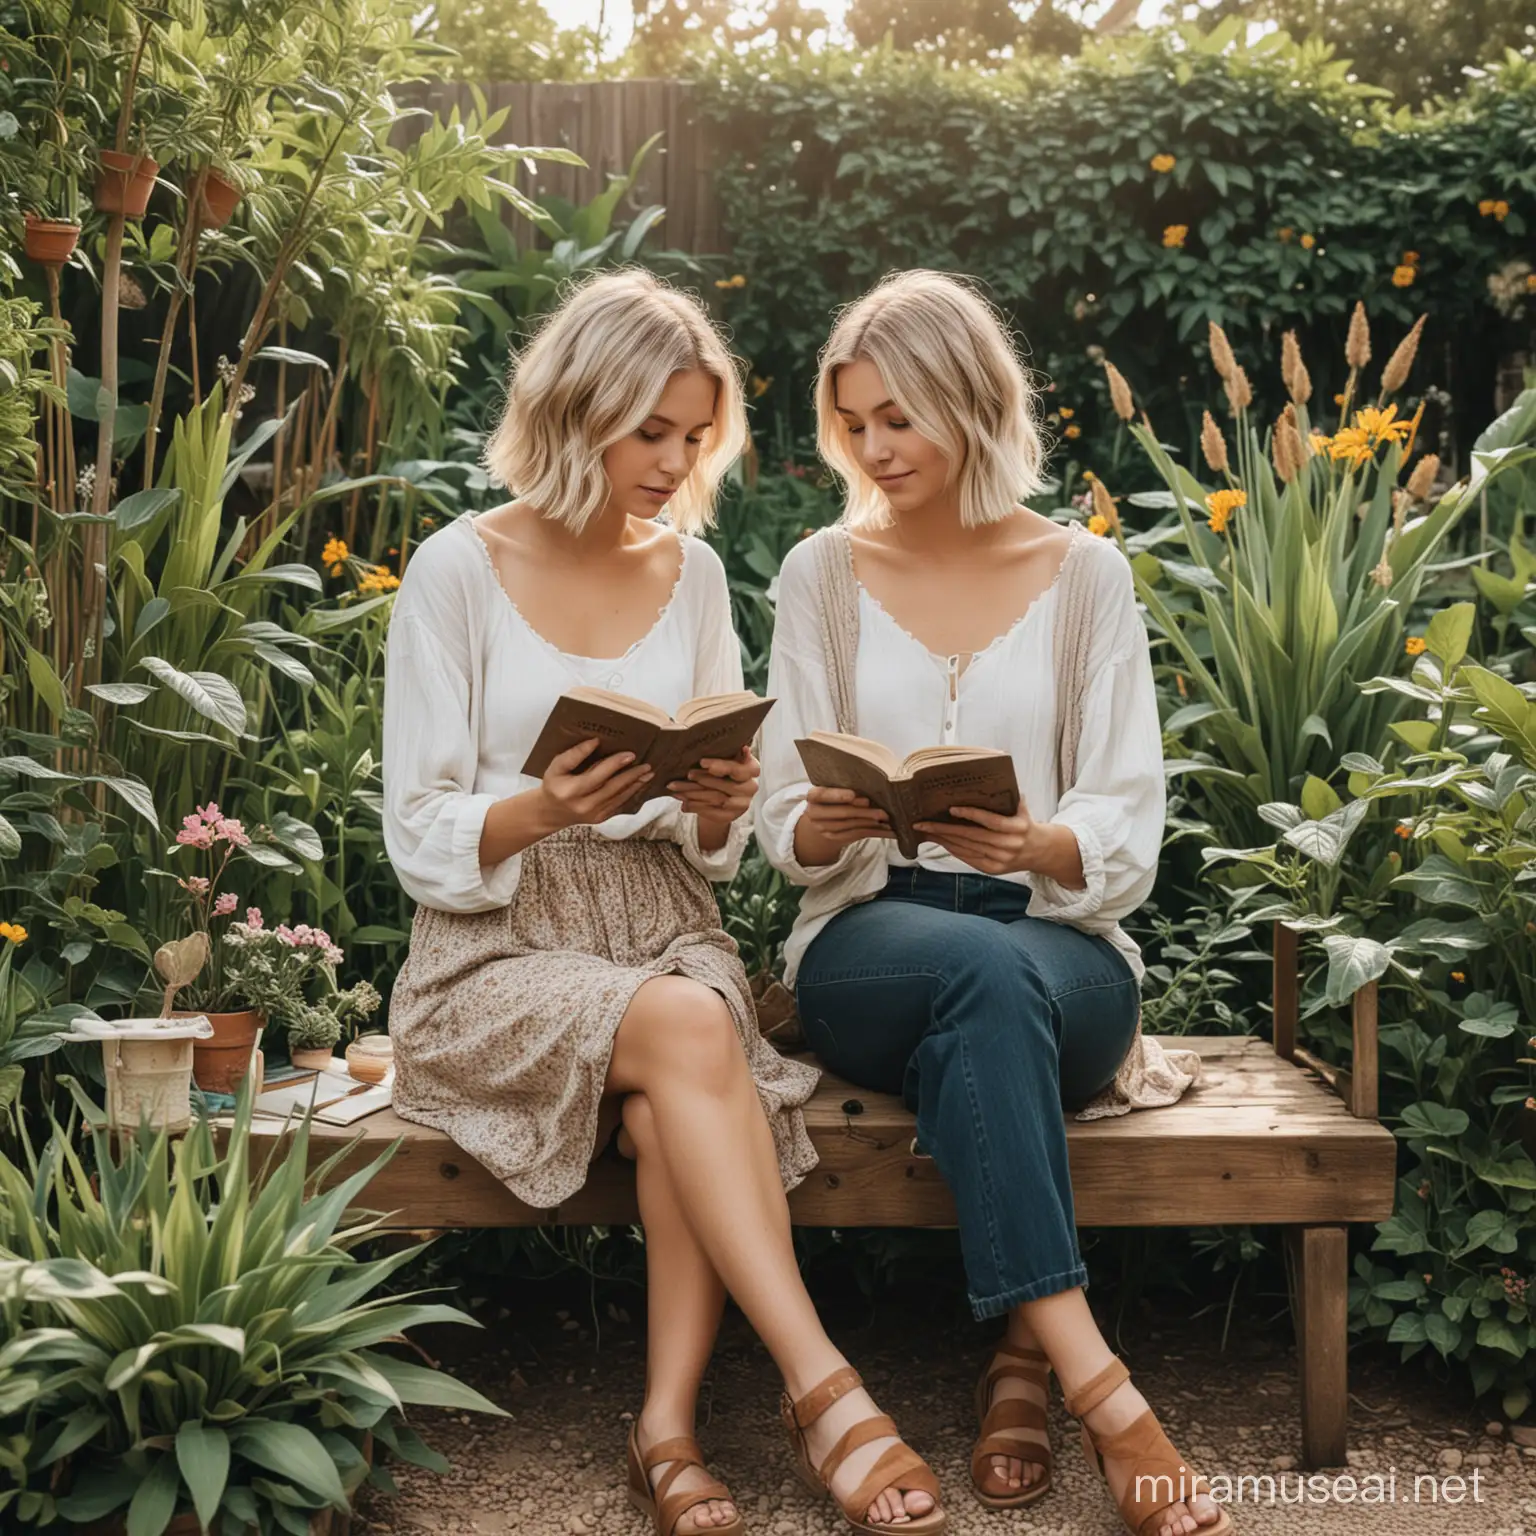 Blonde Girls Reading Books in Boho Garden